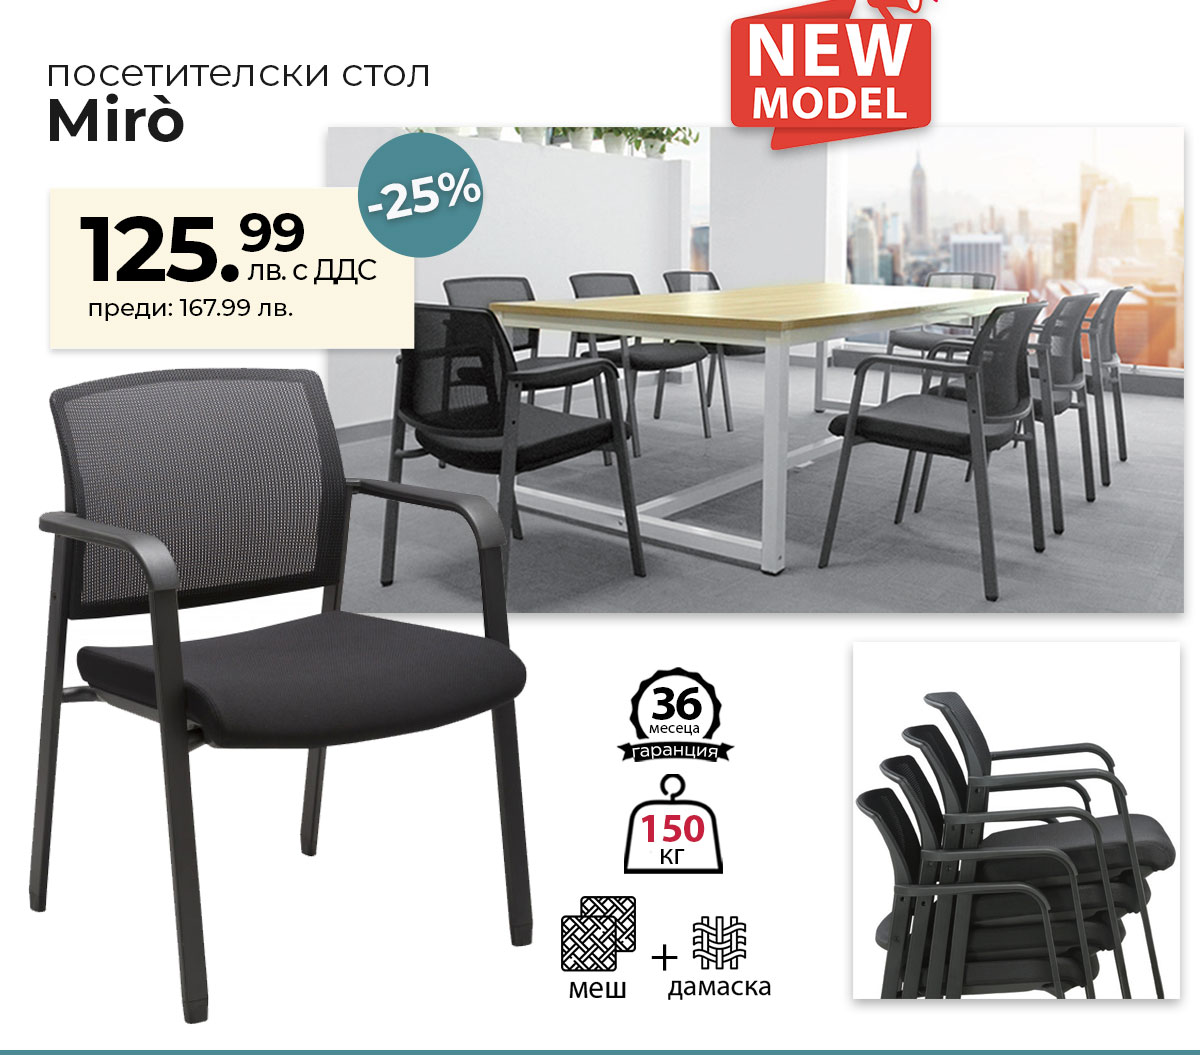 Нов модел: Посетителски стол Miro